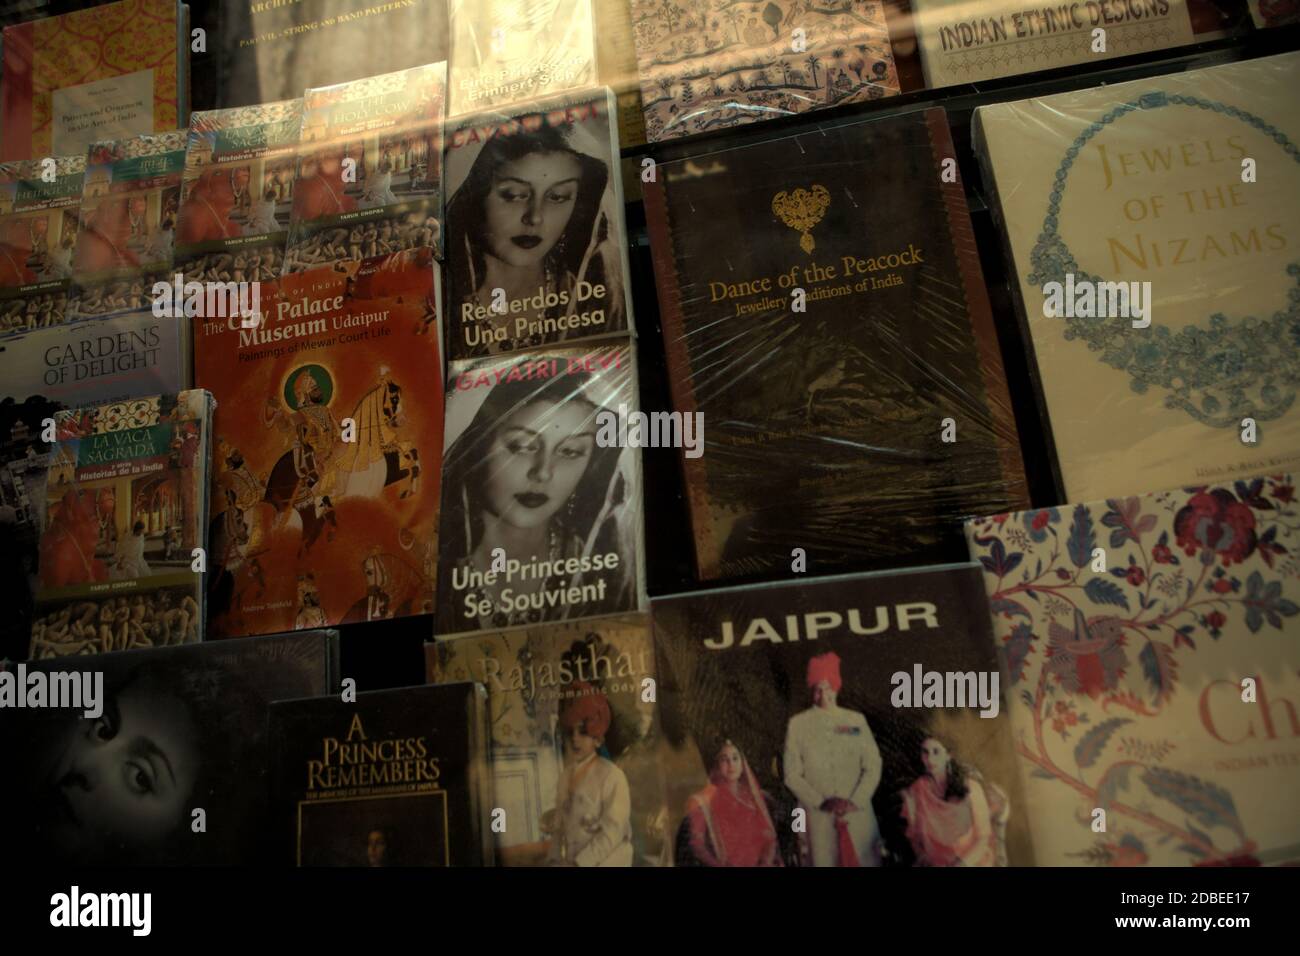 Bücher über indische Kultur, Kunst und Geschichte werden in einem Souvenirshop im Amer Fort Complex in Amer, Rajasthan, Indien, ausgestellt. Stockfoto